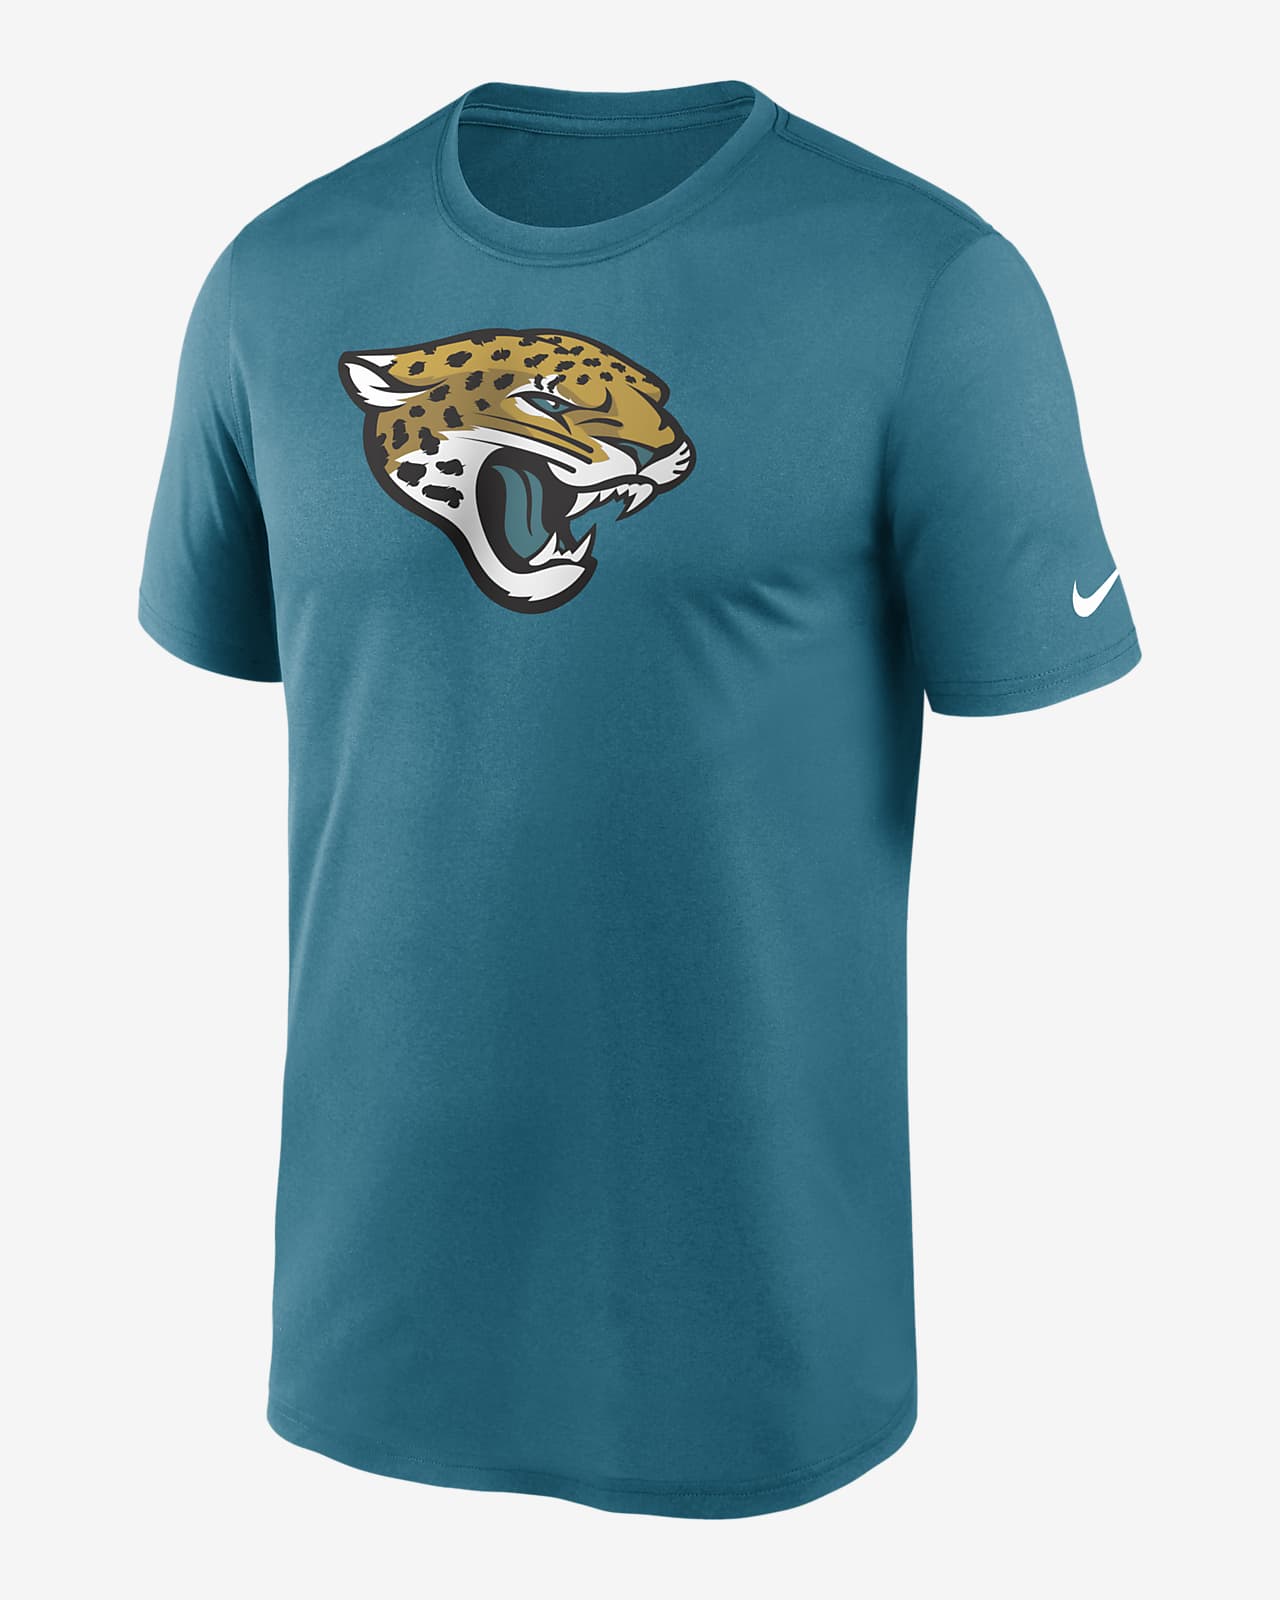 mens jaguars shirt